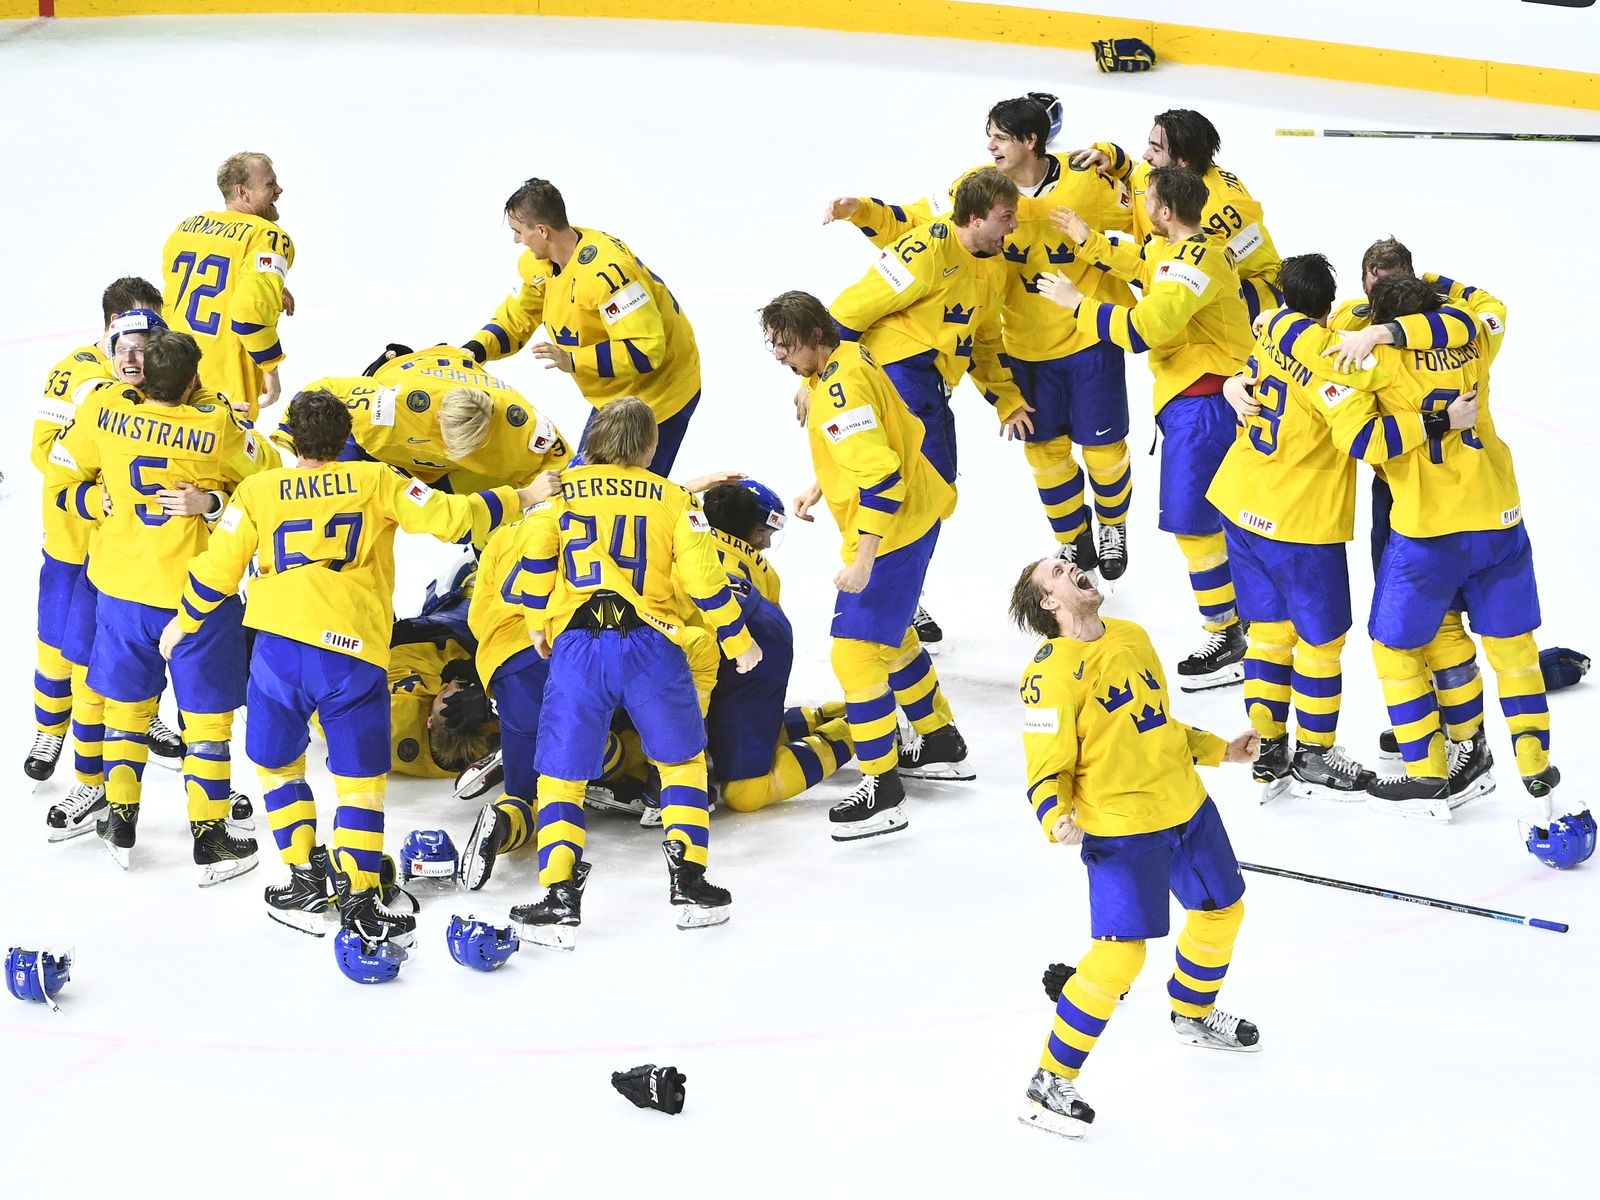 KÖPENHAMN 20180520
Sverige jublar efter segern i finalen i ishockey-VM mellan Sverige och Schweiz i Royal Arena.
Foto: Claudio Bresciani / TT / Kod 10090 ***Bilden ingår i SPORTPAKETET. För övriga BETALBILD***